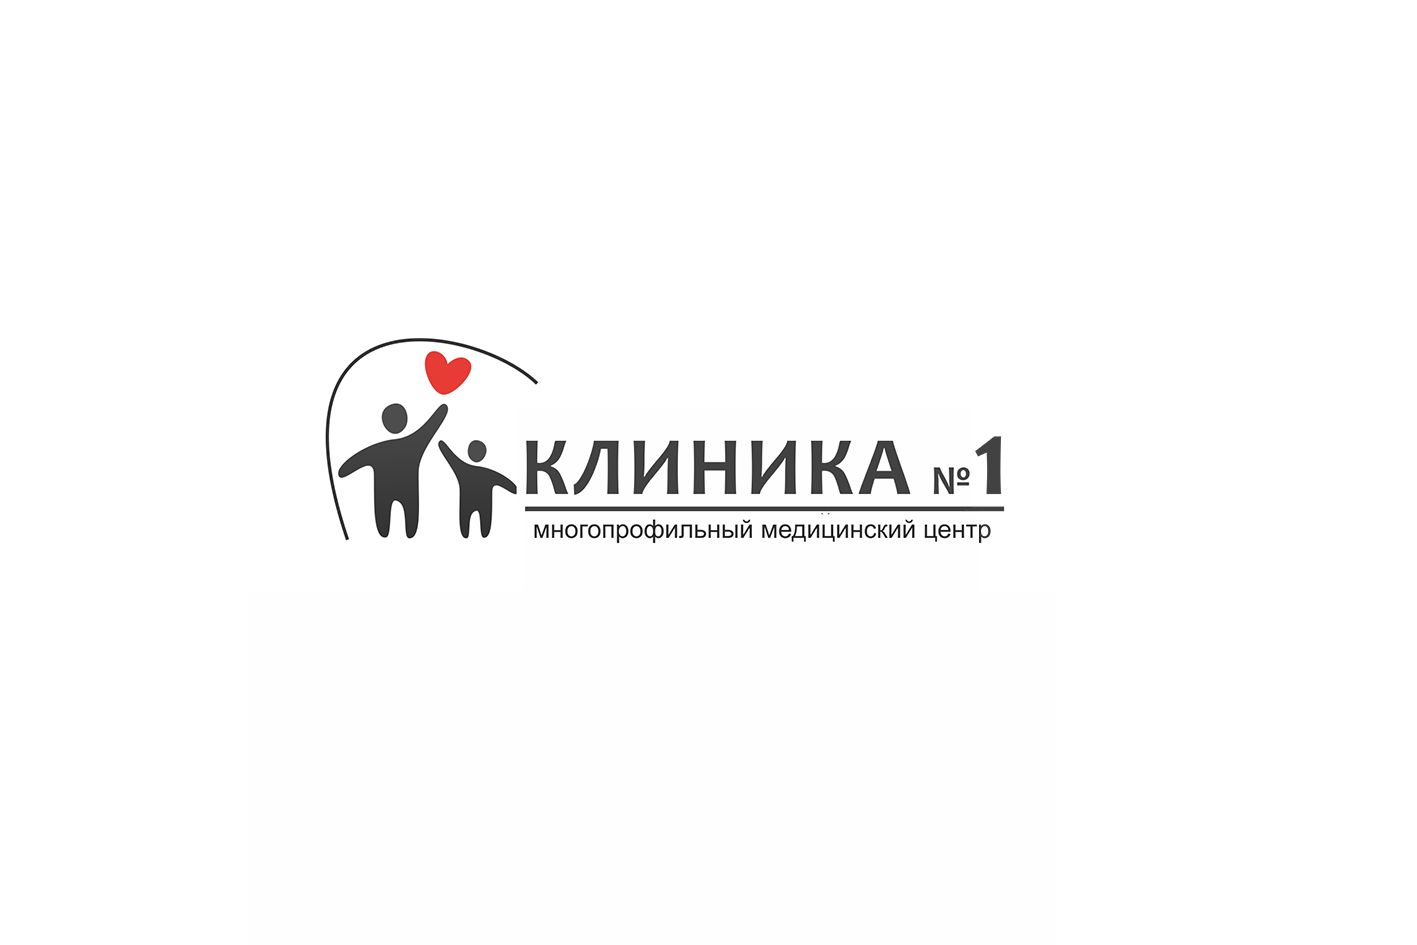 Логотип и фирменный стиль для медицинской клиники - дизайнер Anastasija